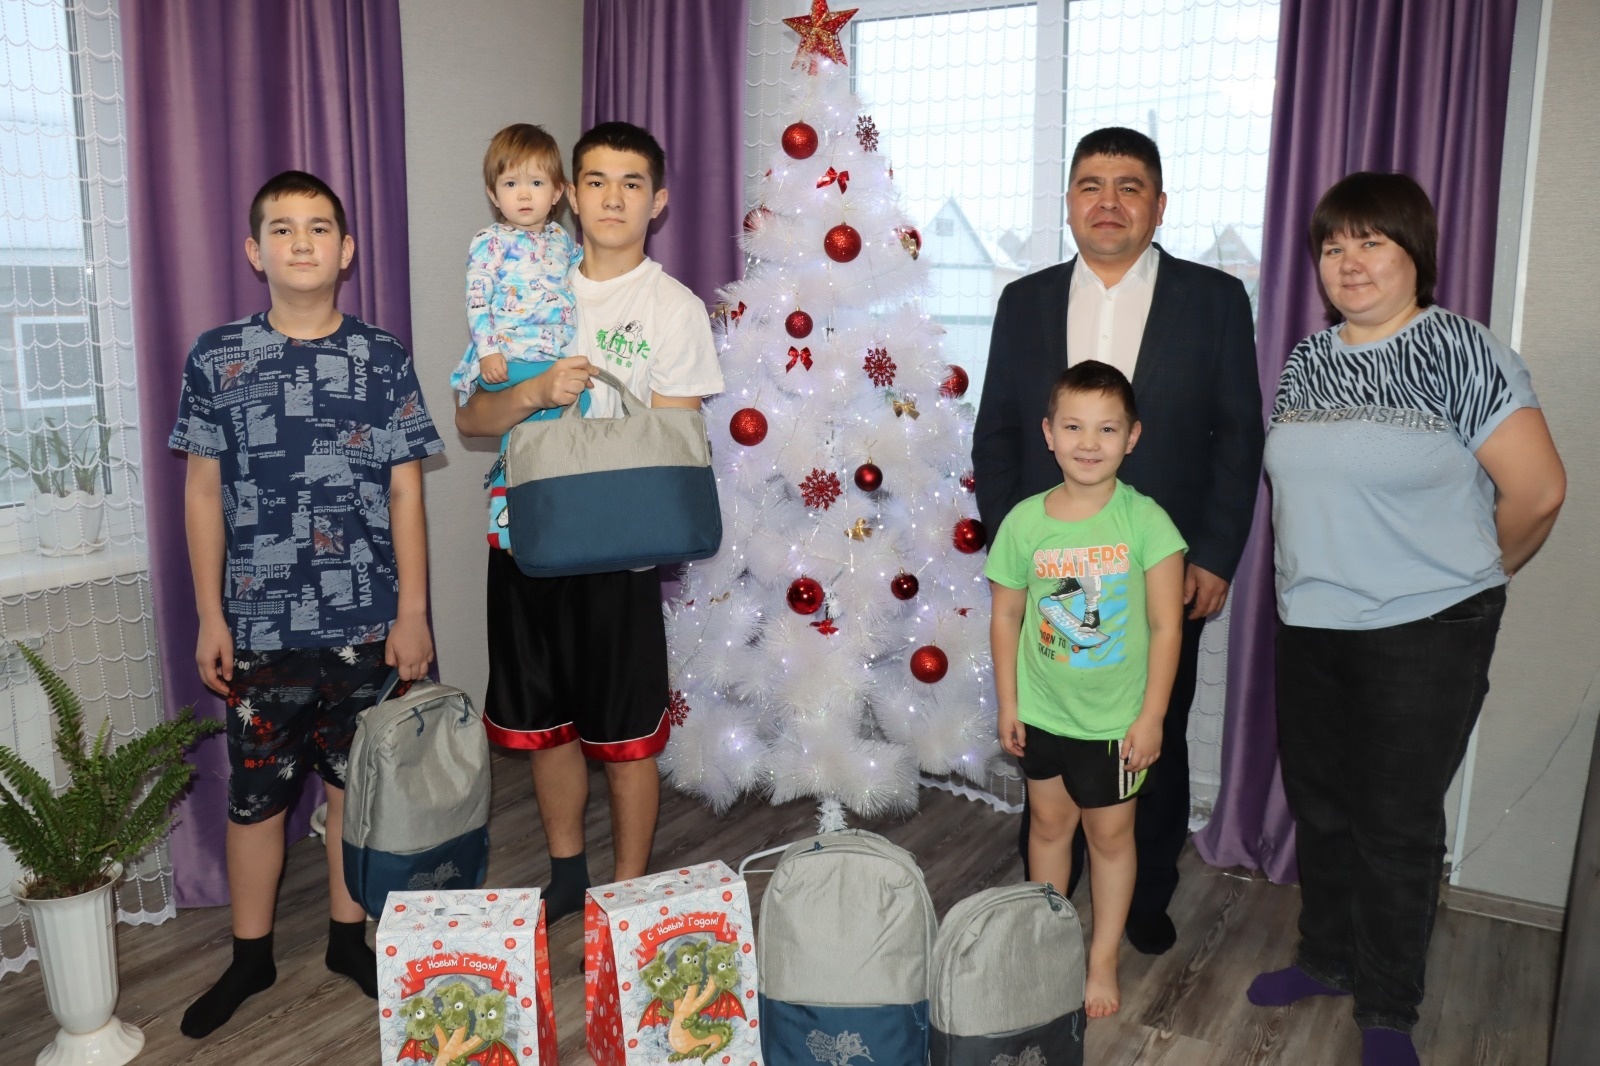 Глава администрации Хайбуллинского района Рустам Шарипов поздравил с наступающим Новым годом детей из семей участников СВО